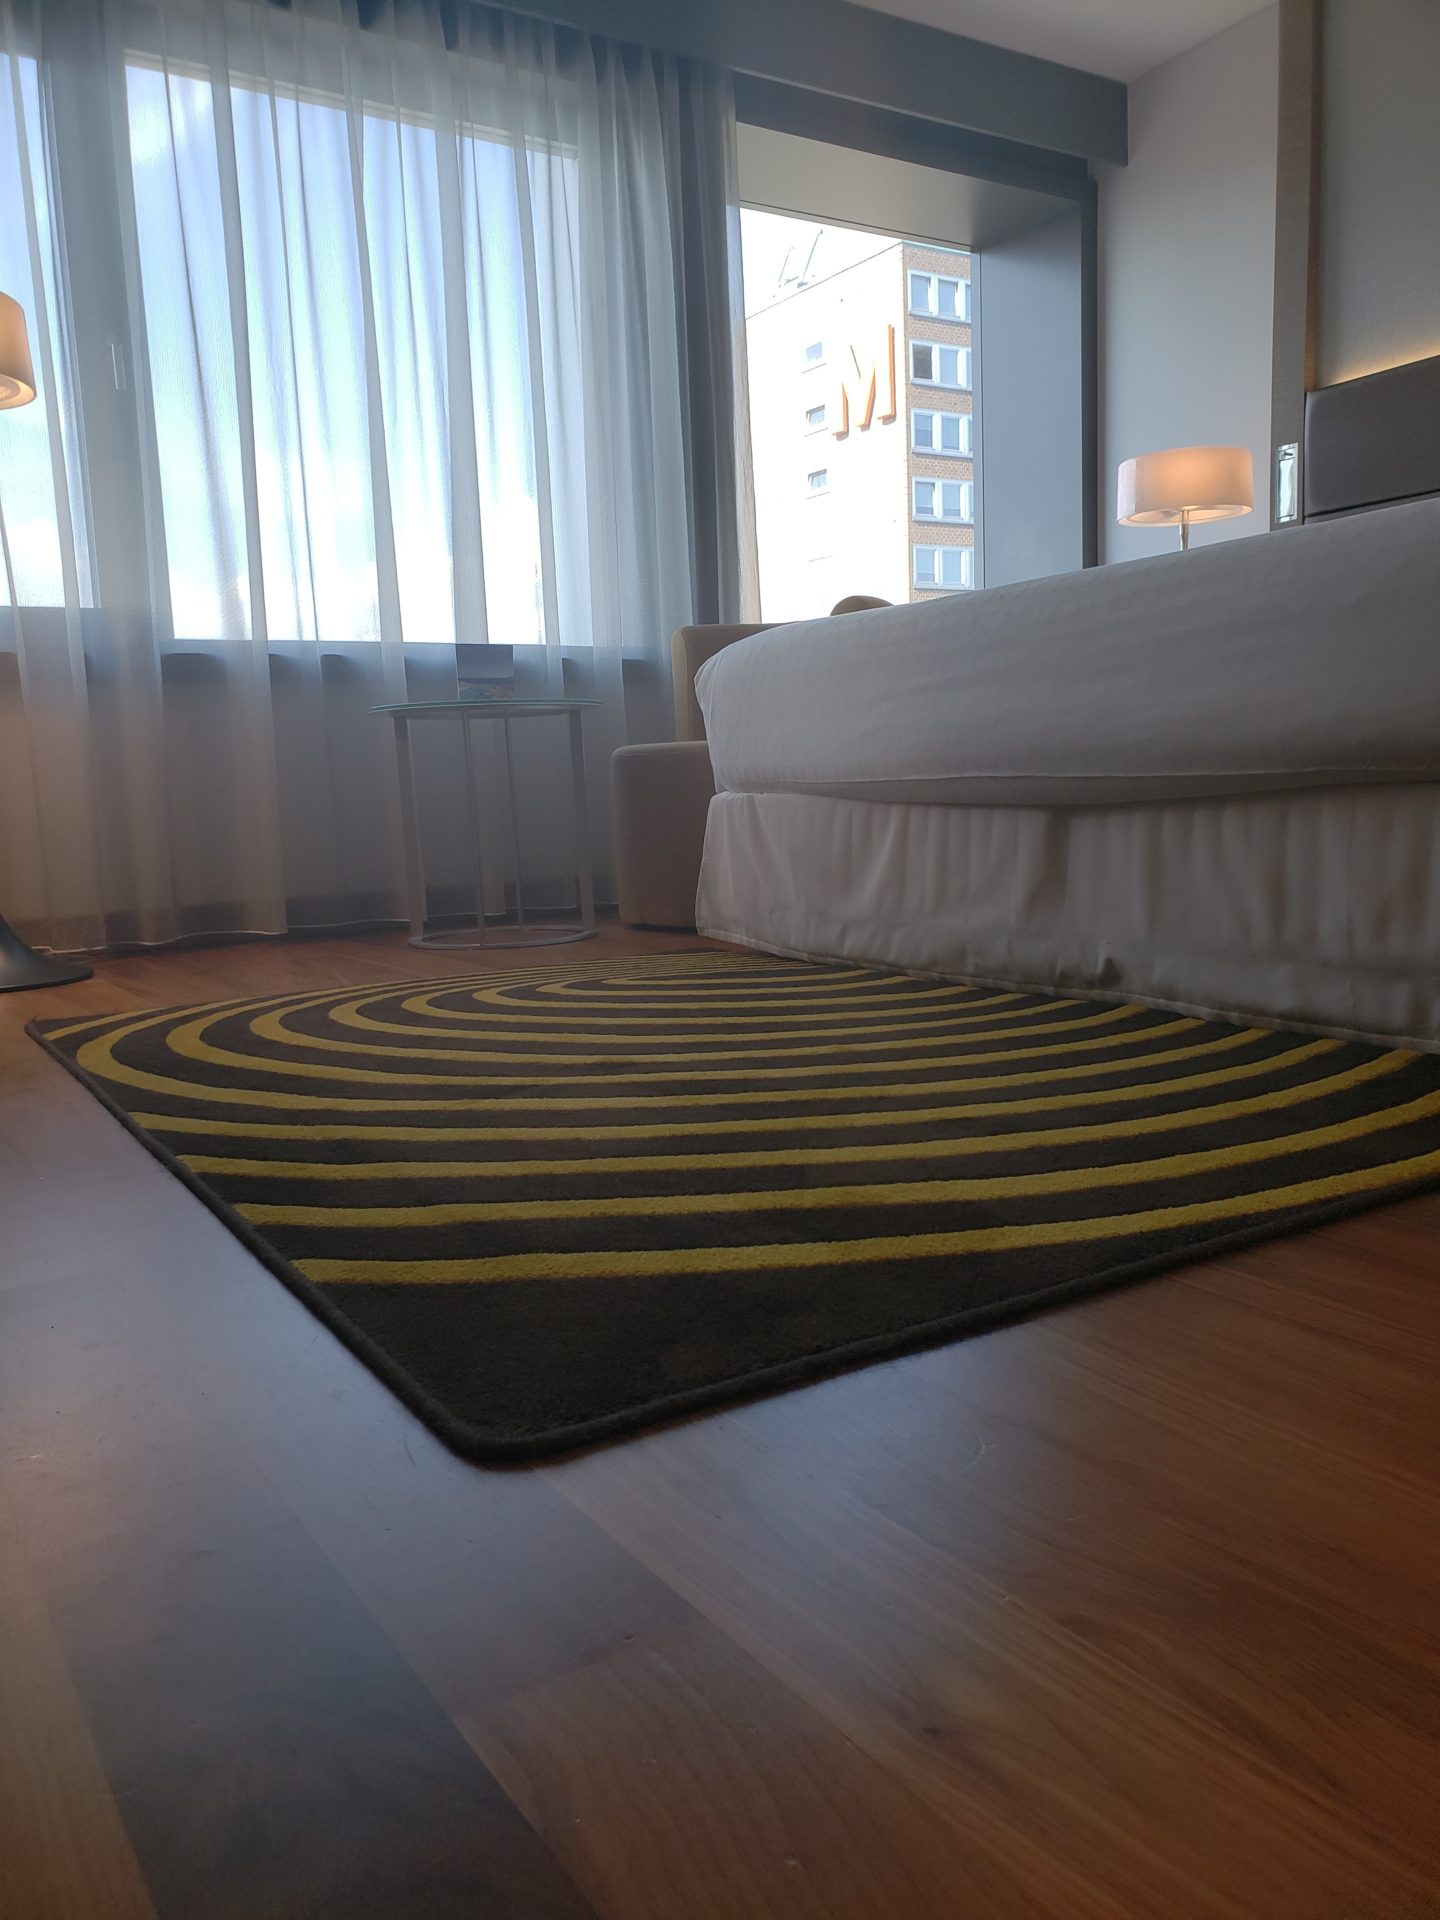 a rug on the floor